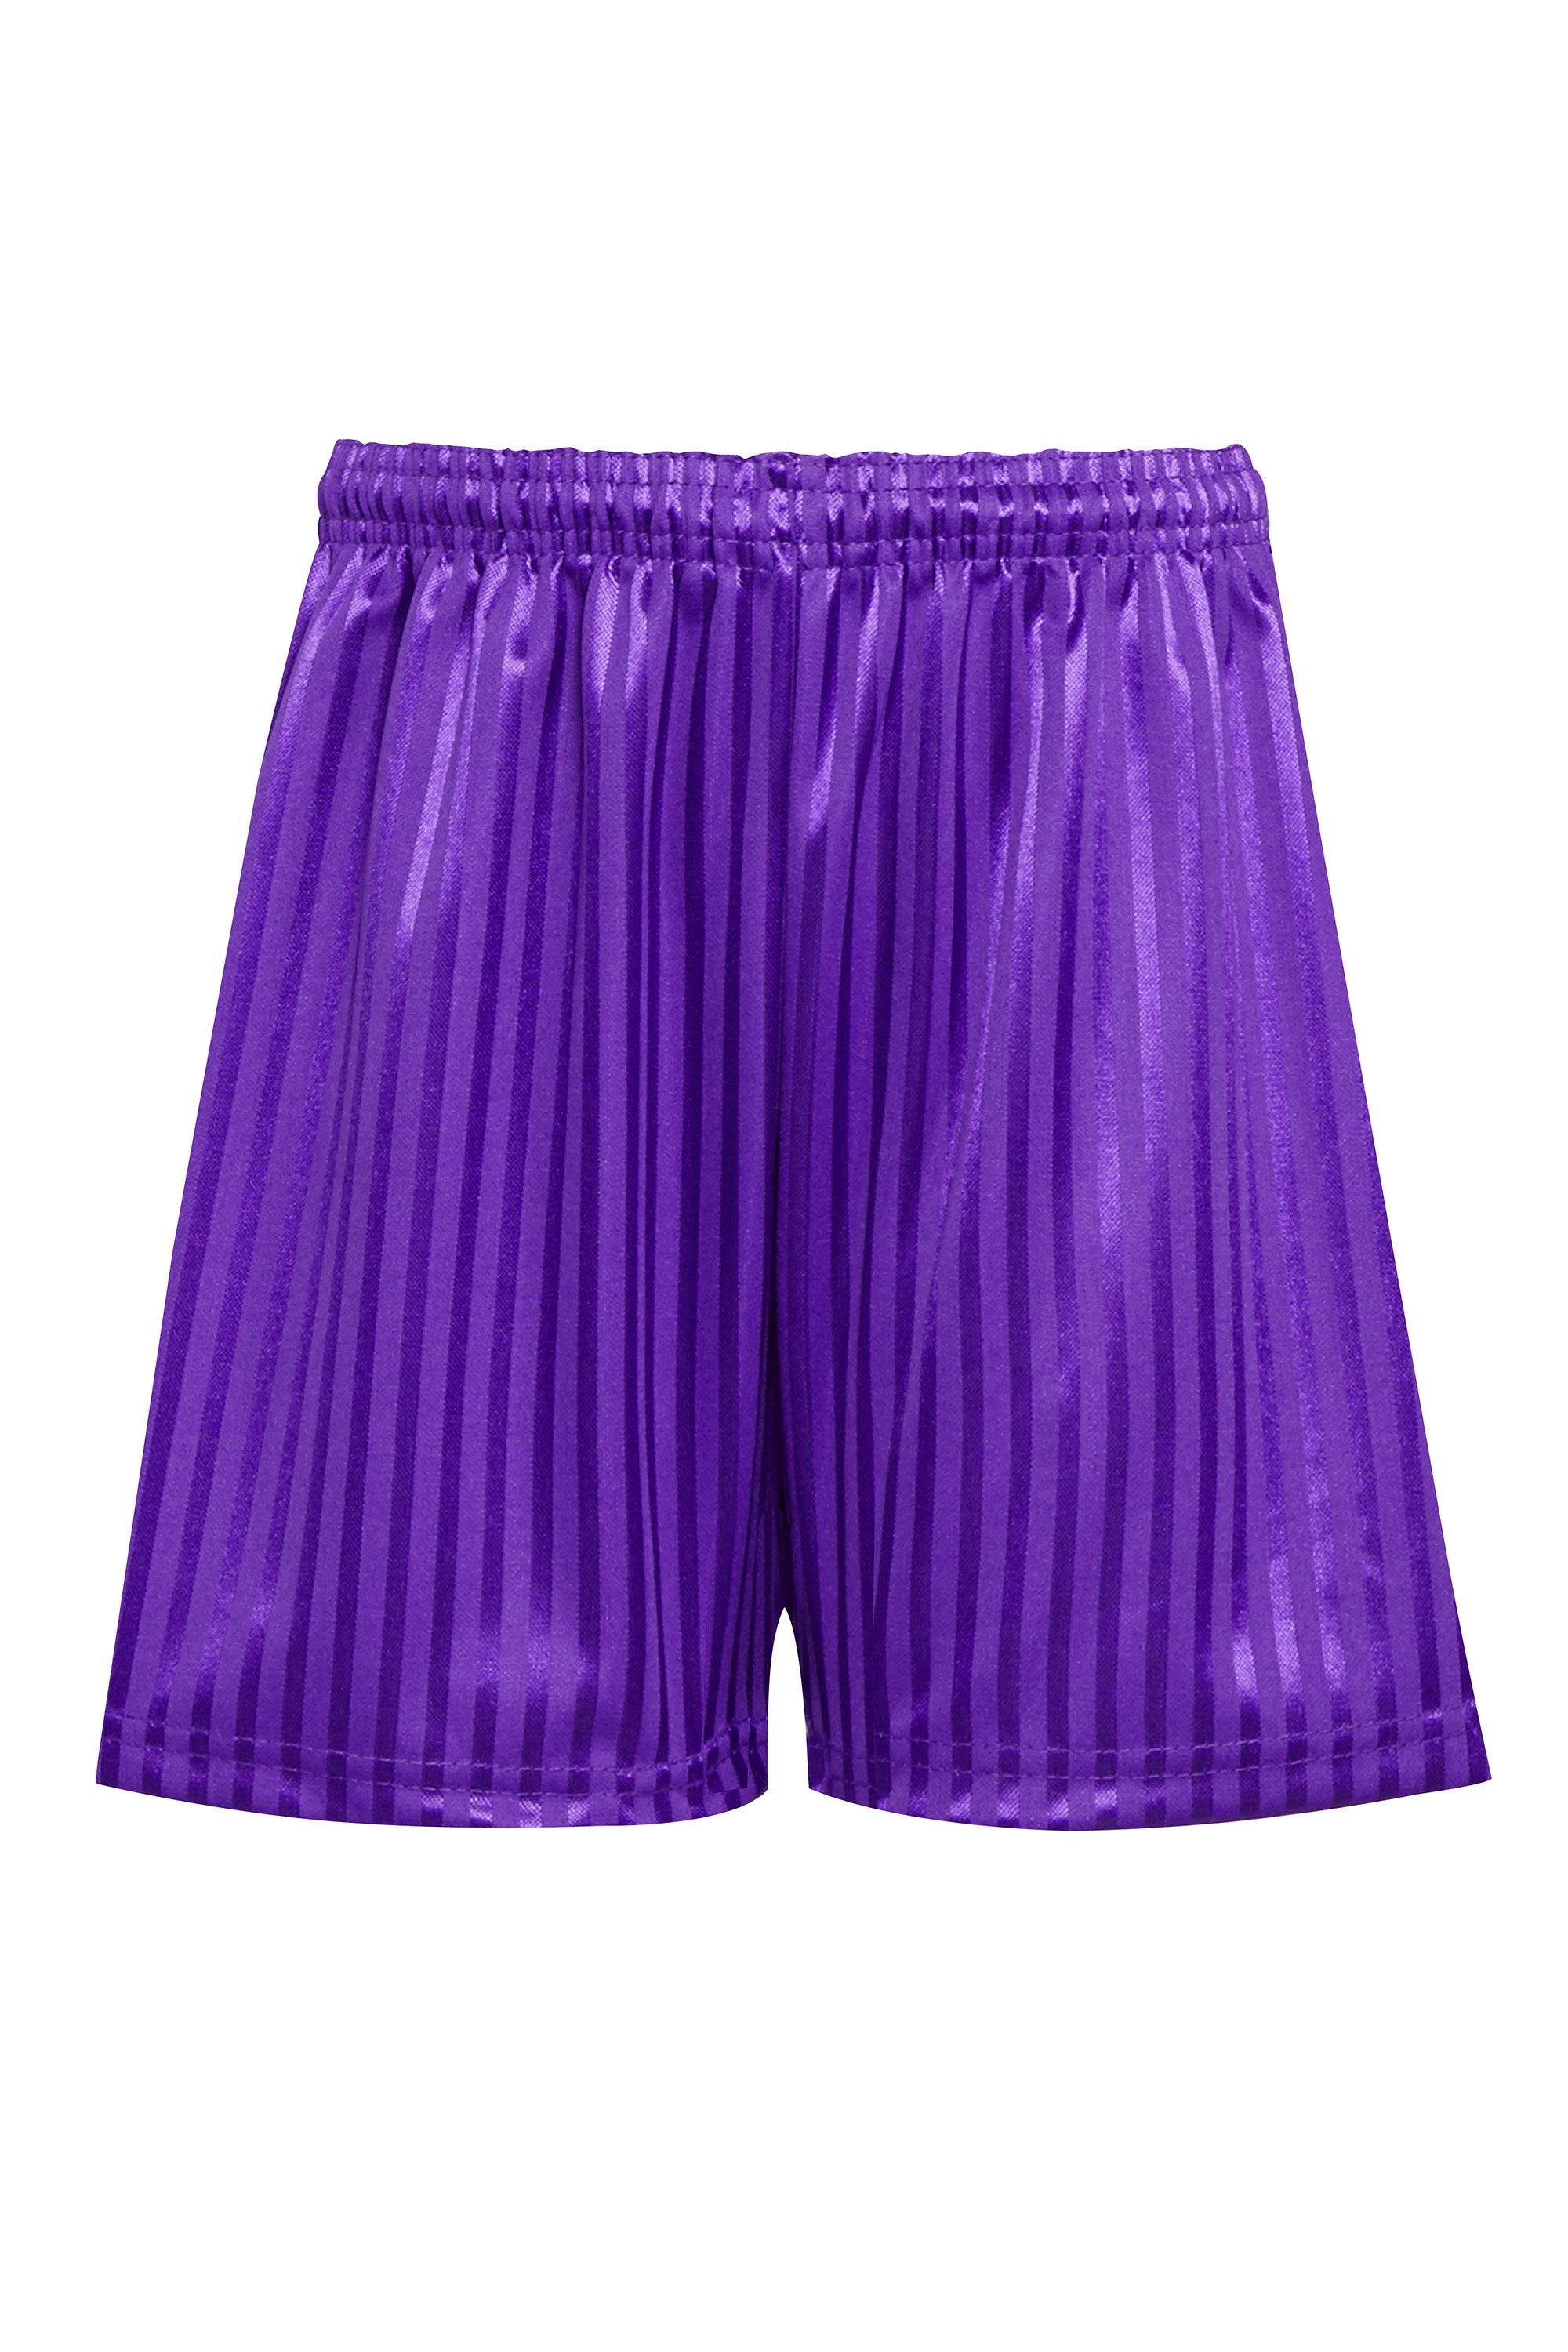 Спортивные шорты David Luke, фиолетовый спортивные шорты david luke синий